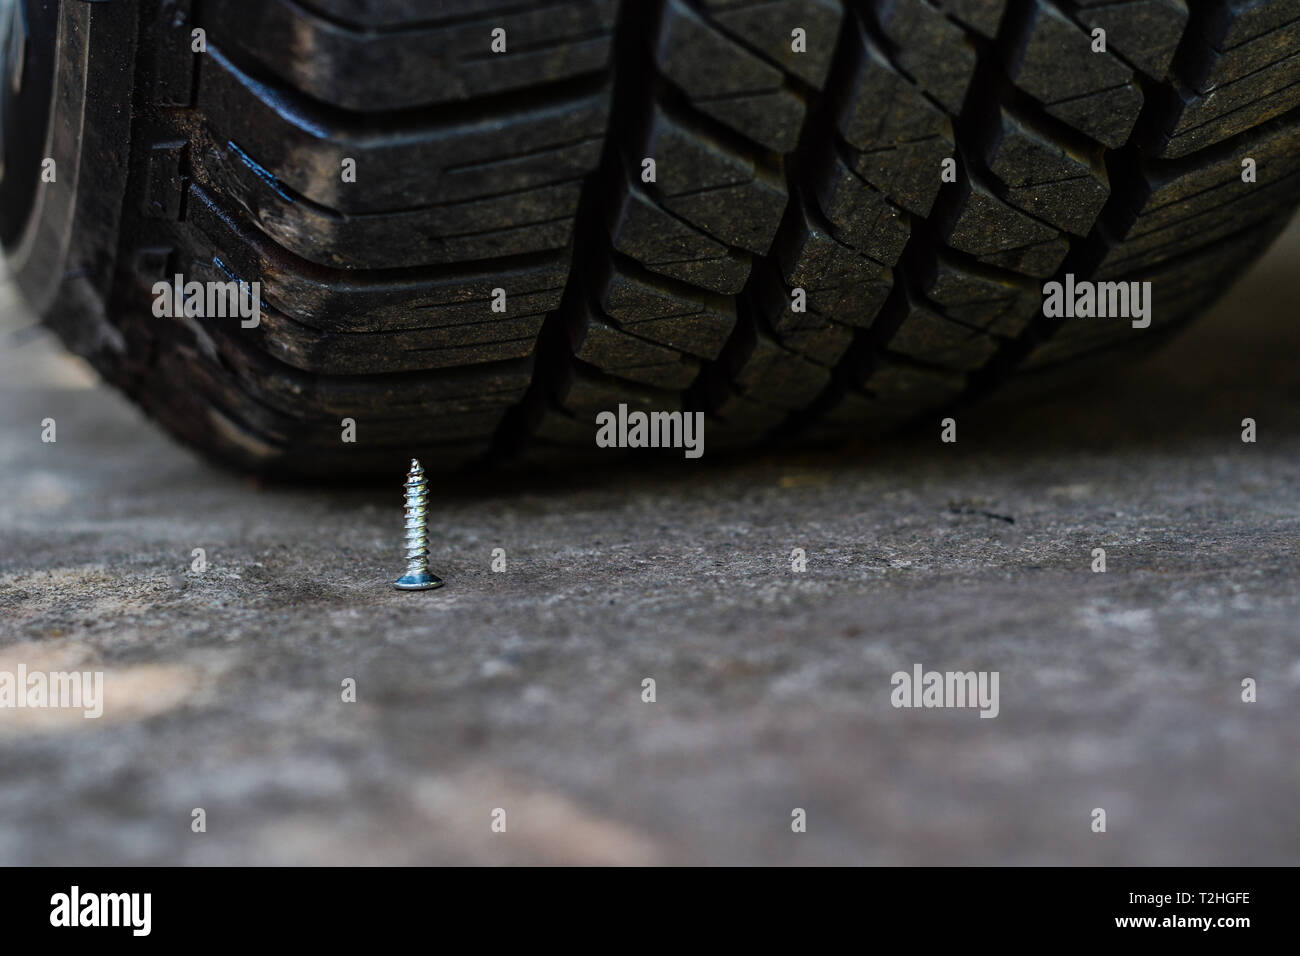 In der Nähe der Schraube Falle war unter dem Auto Reifen gestellt wird  Stockfotografie - Alamy